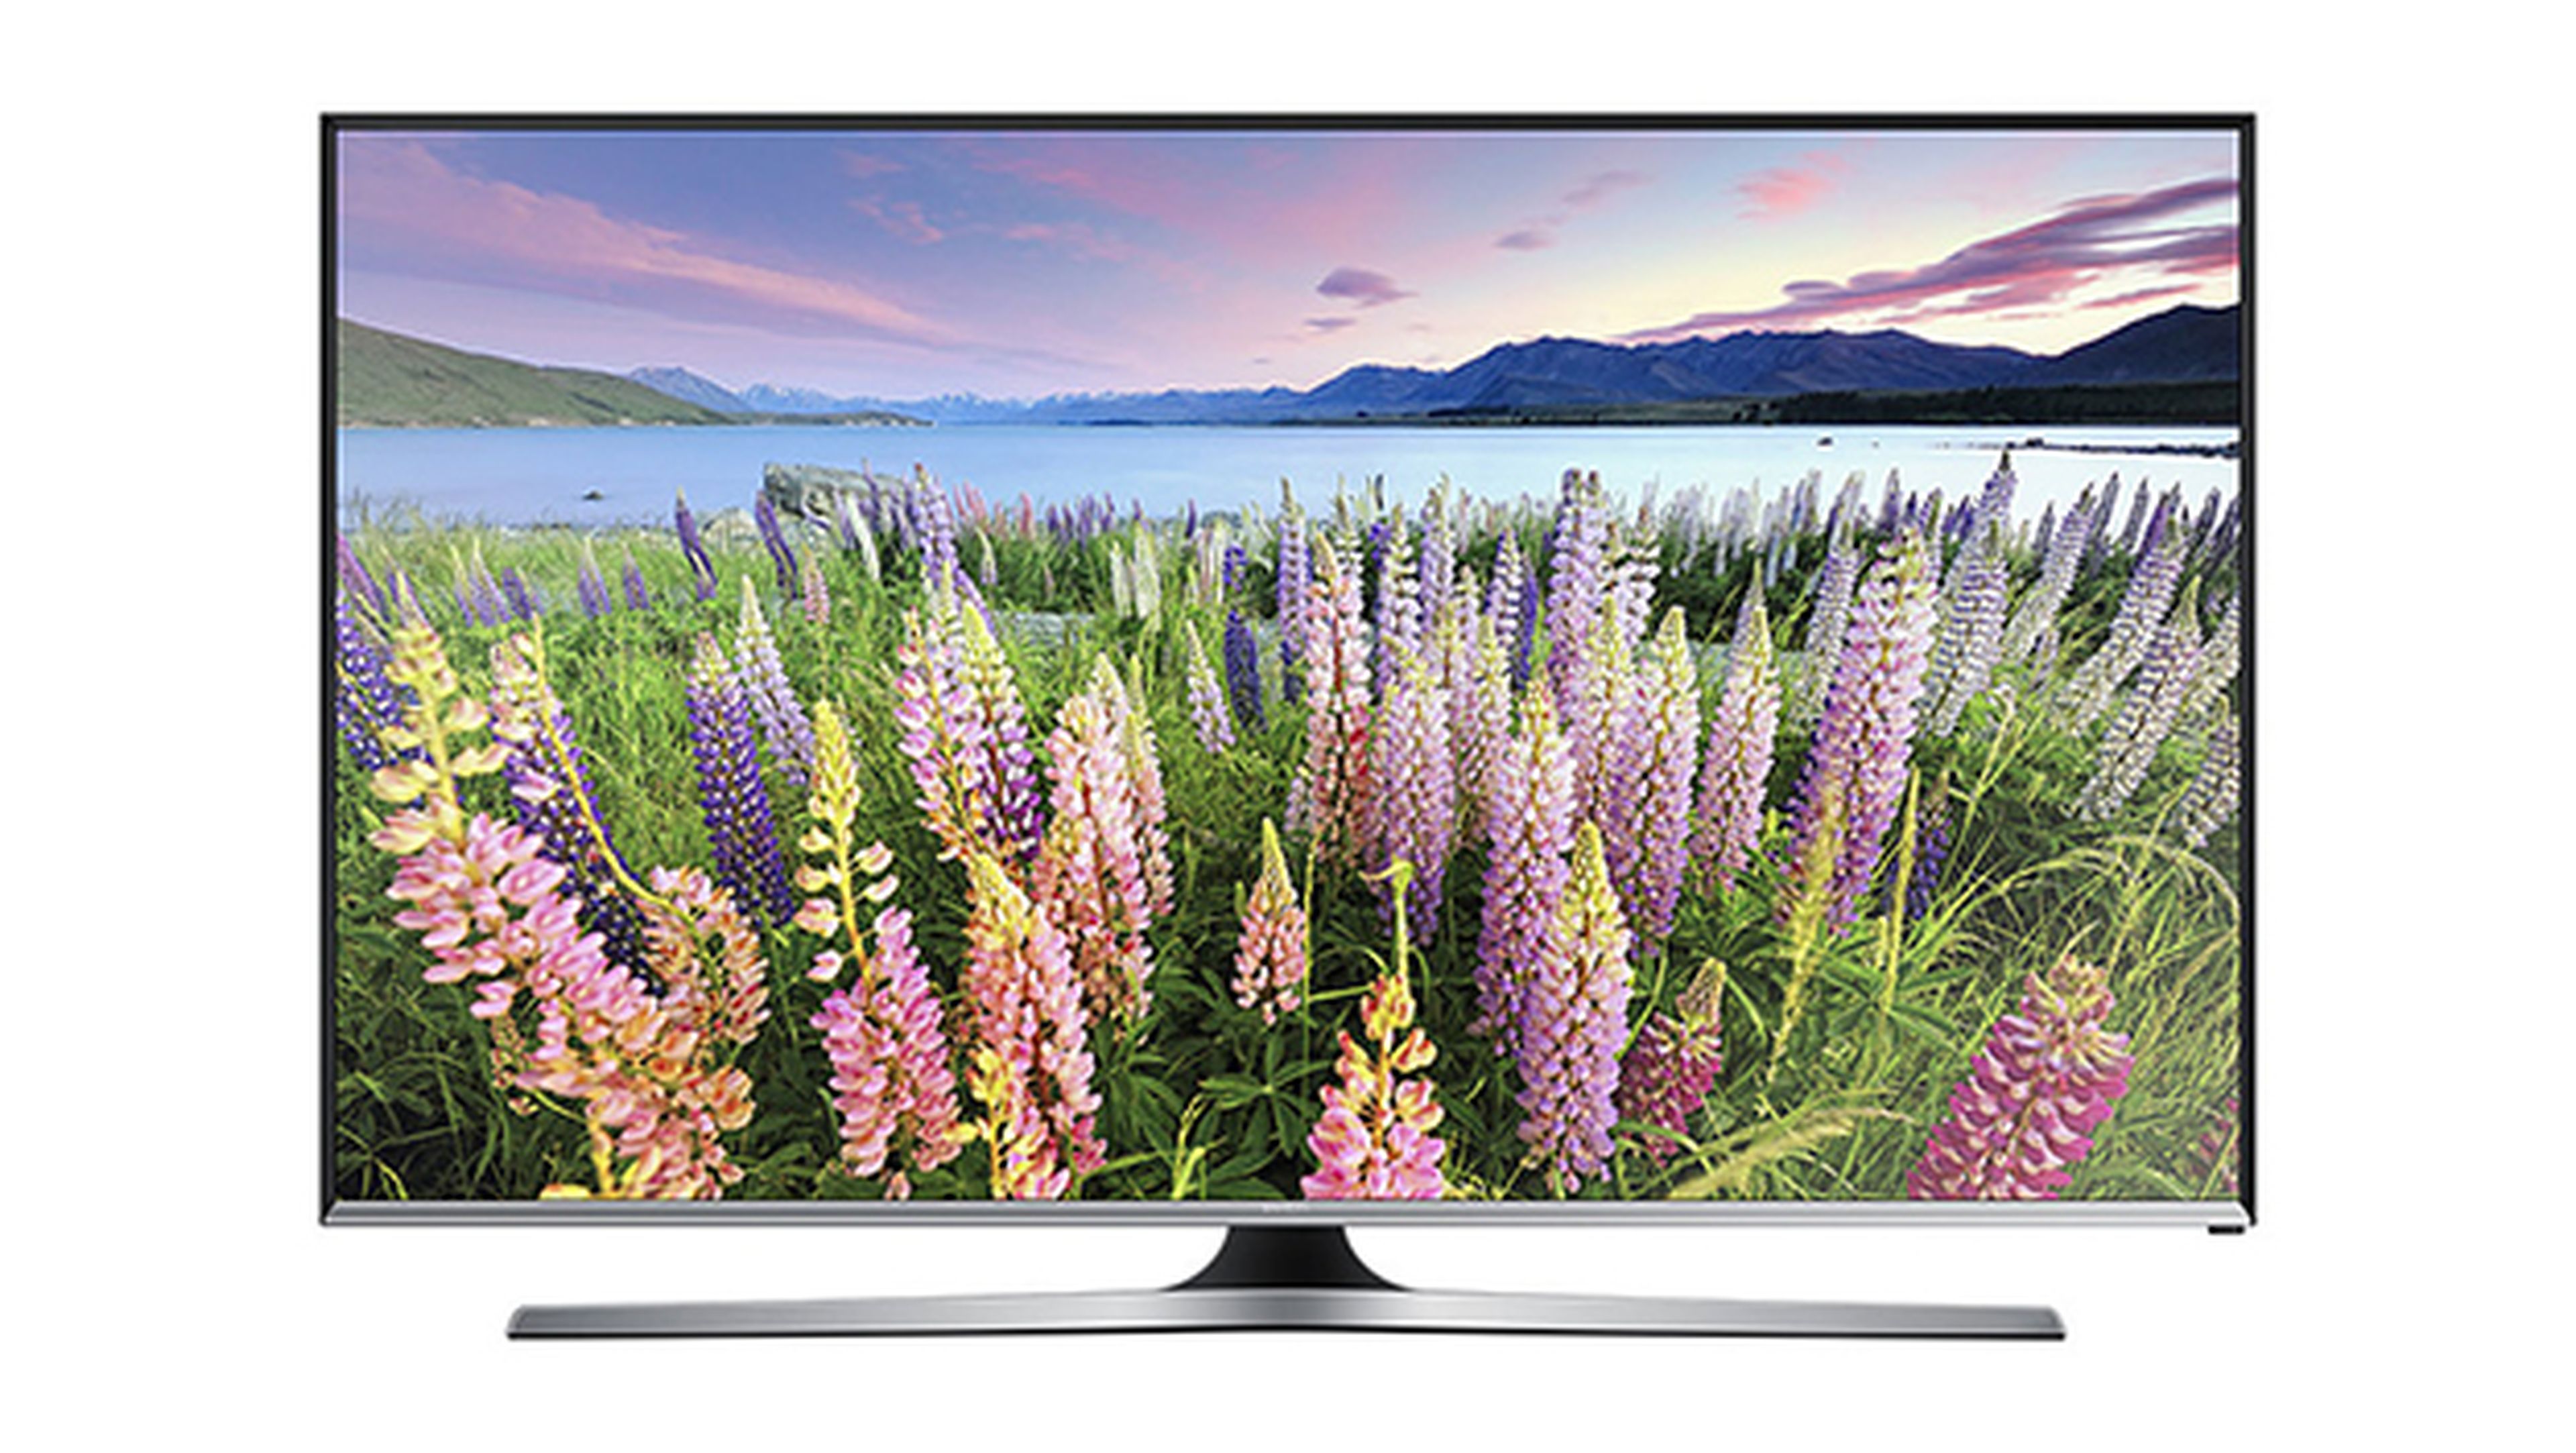 Samsung UE43J5500 smart TV de 43"